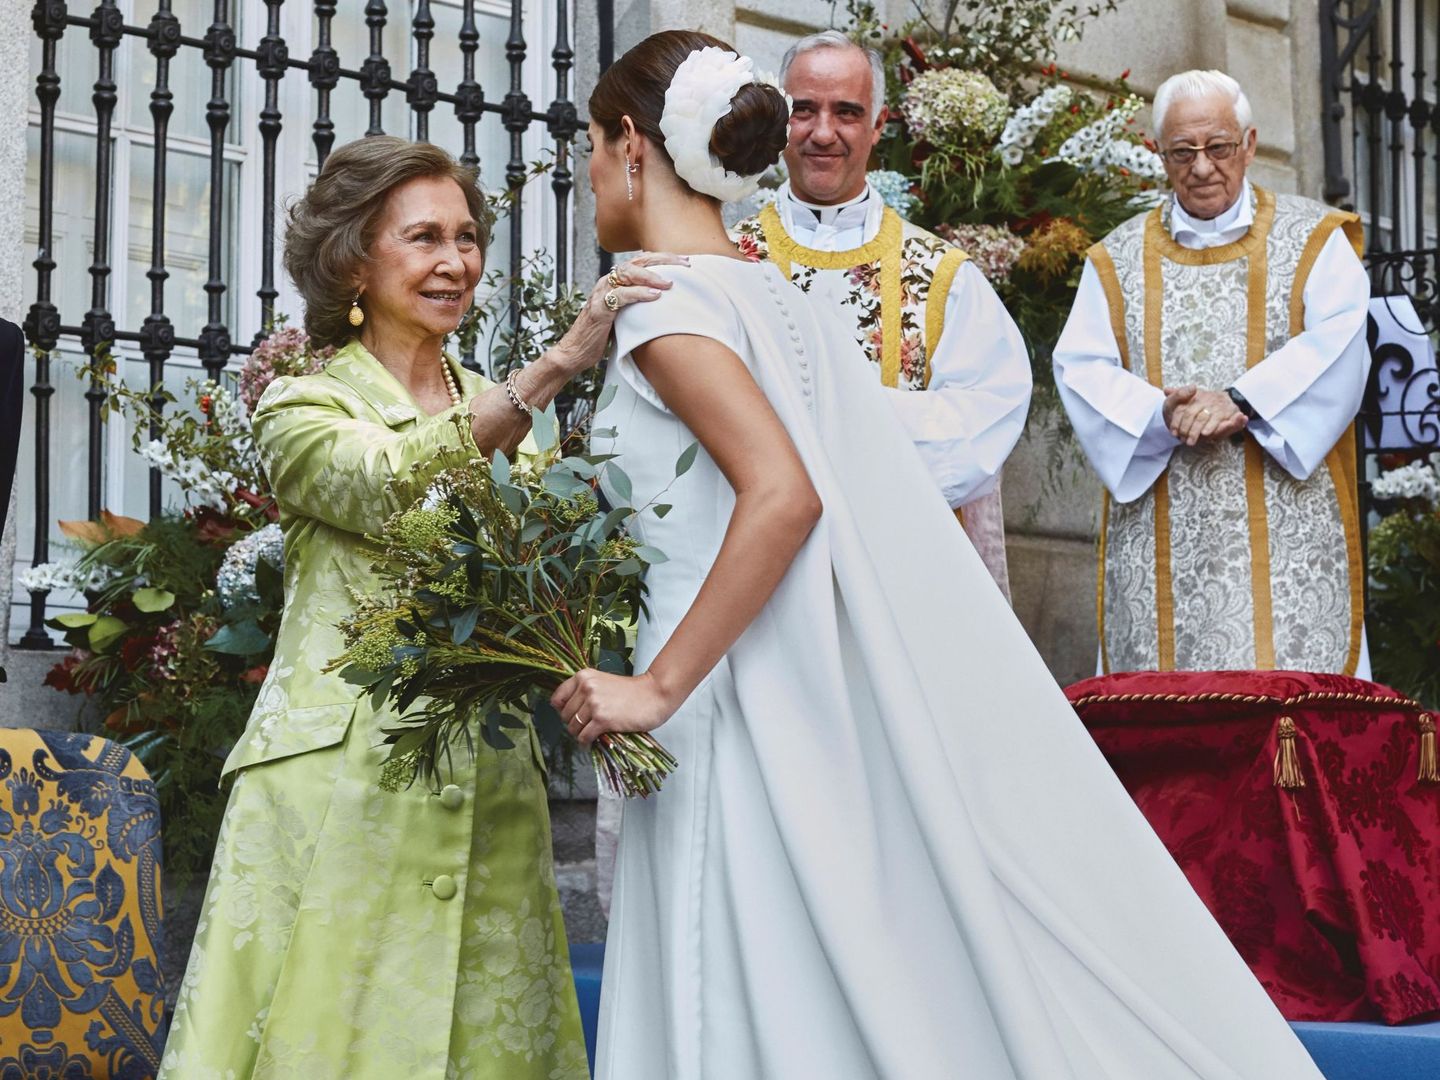 Sofía Palazuelo saluda a la reina Sofía a su llegada al altar en los jardines del palacio de Liria. (EFE)